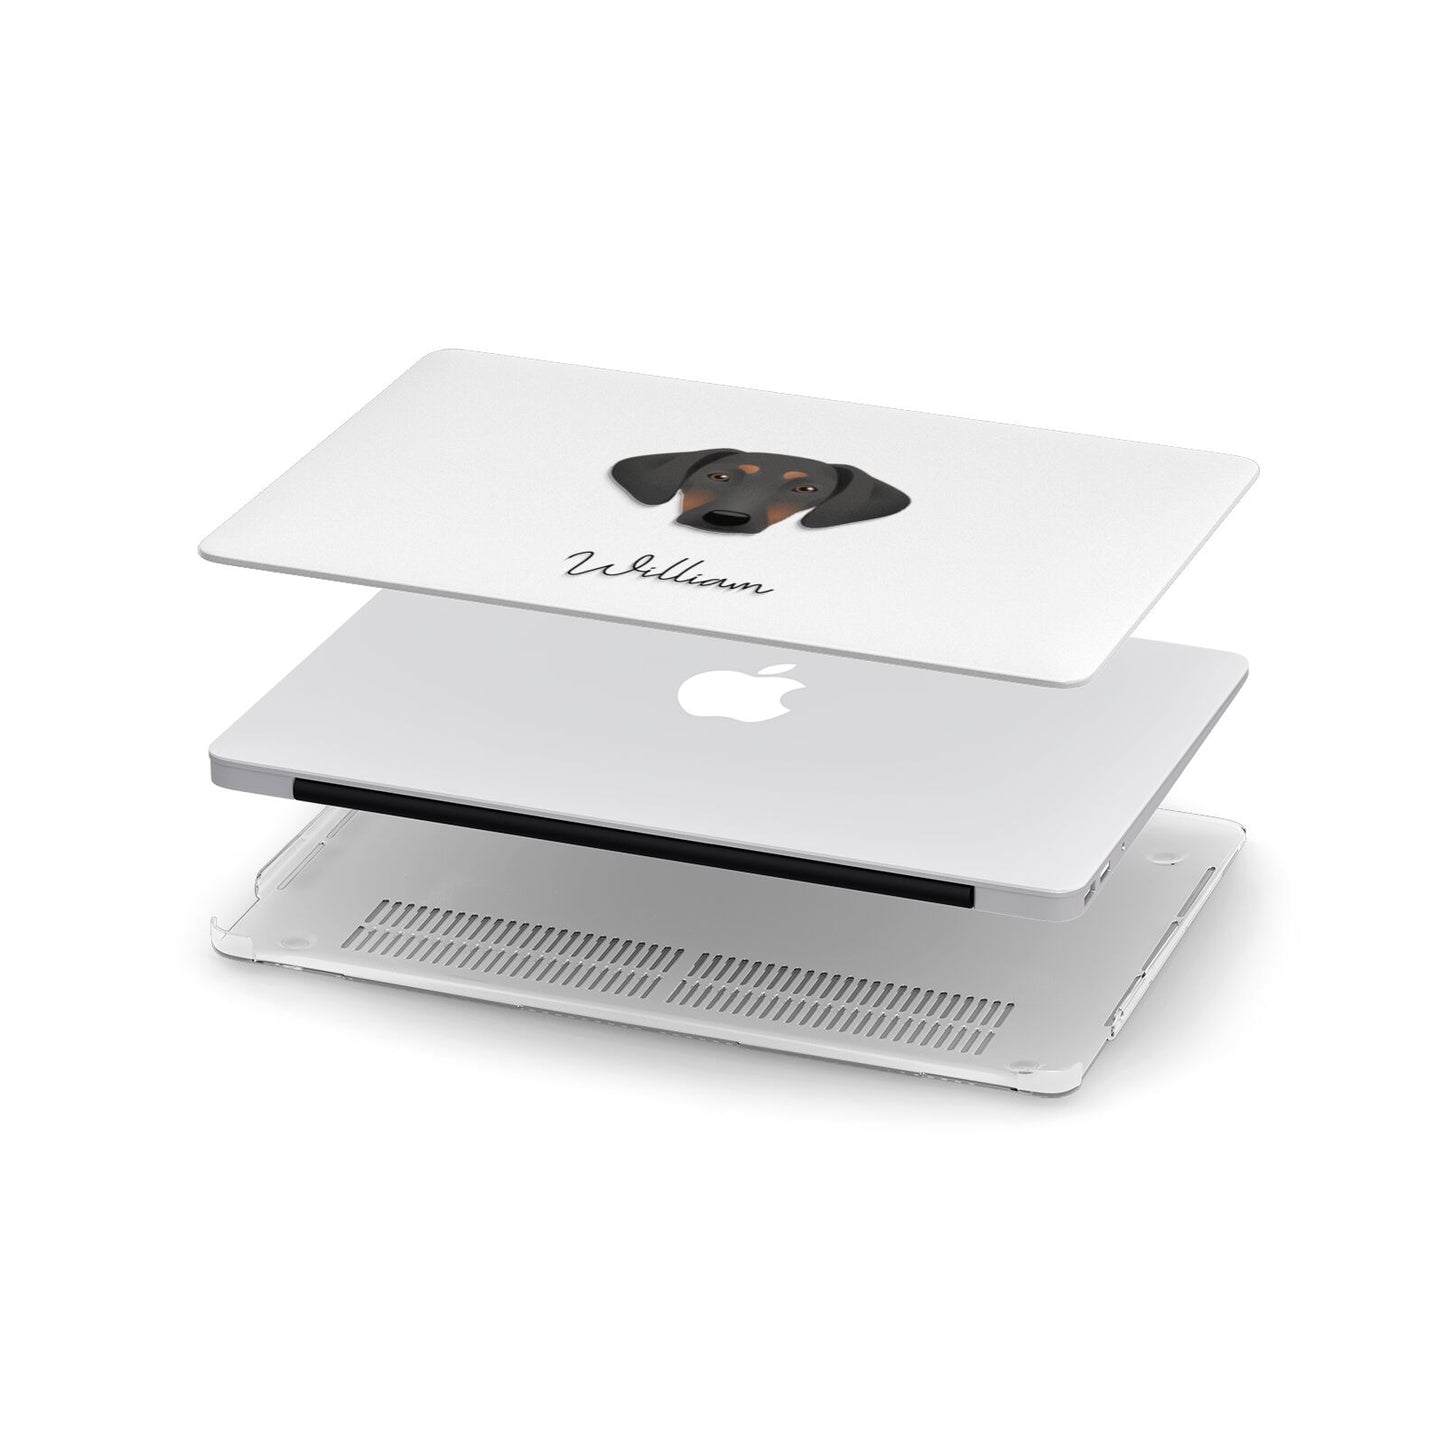 Greek Harehound Personalised Apple MacBook Case in Detail